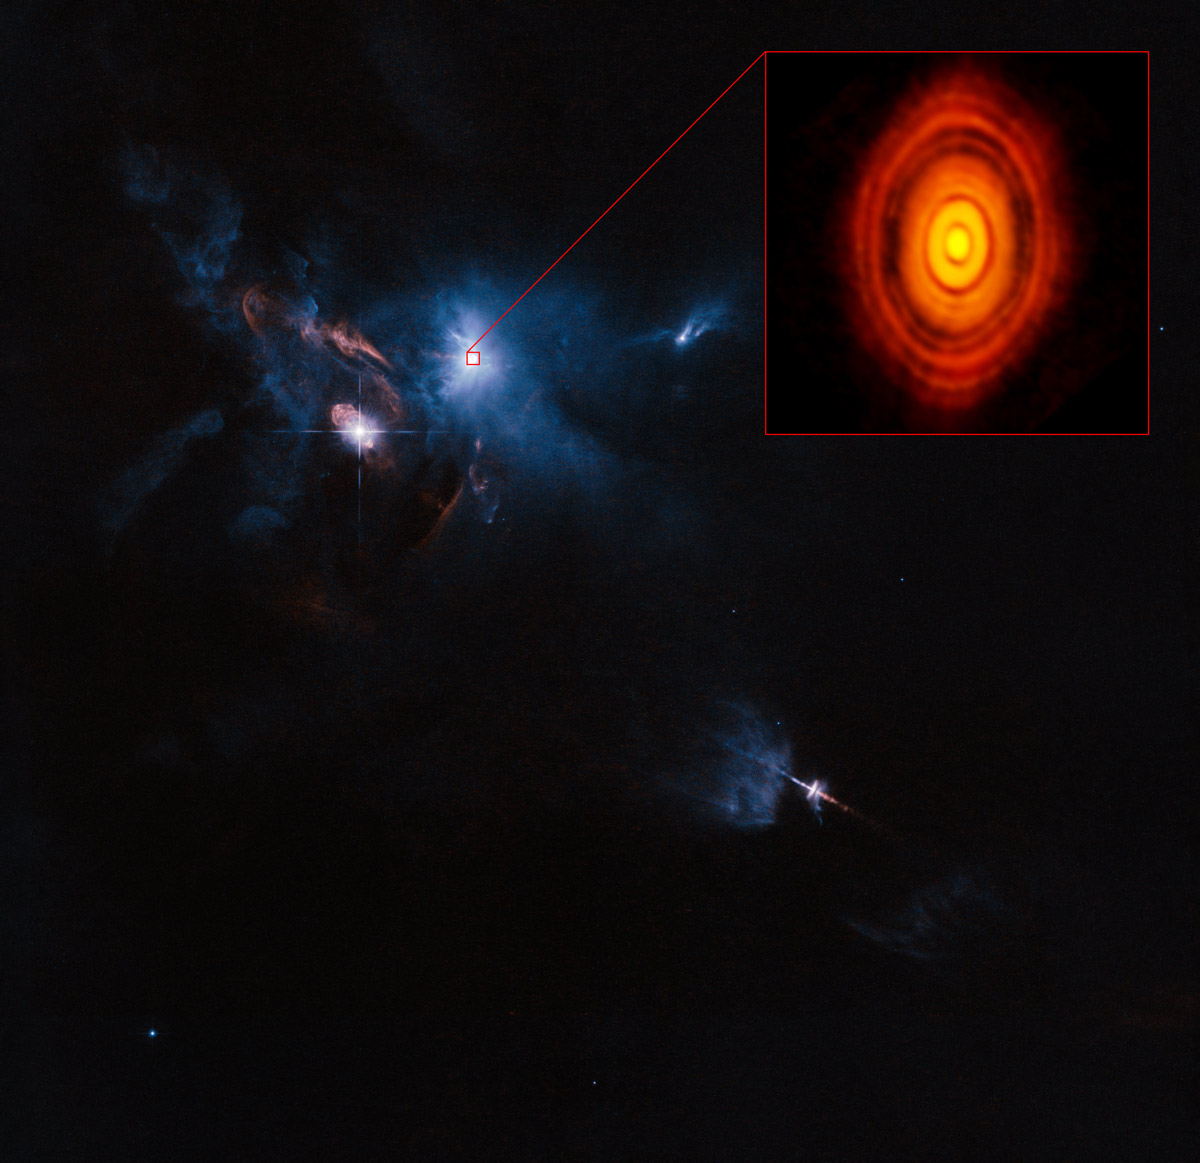 <p>Esta es la imagen más nítida jamás obtenida por ALMA, aún más precisa que las que se toman normalmente en luz visible con el telescopio espacial Hubble de NASA/ESA. En ella vemos el disco protoplanetario que rodea a la joven estrella HL Tauri. Estas nuevas observaciones de ALMA revelan subestructuras dentro del disco que nunca antes se habían visto, e incluso muestran las posibles posiciones de los planetas formándose en las manchas oscuras dentro del sistema. Crédito: ALMA (ESO/NAOJ/NRAO)</p>
